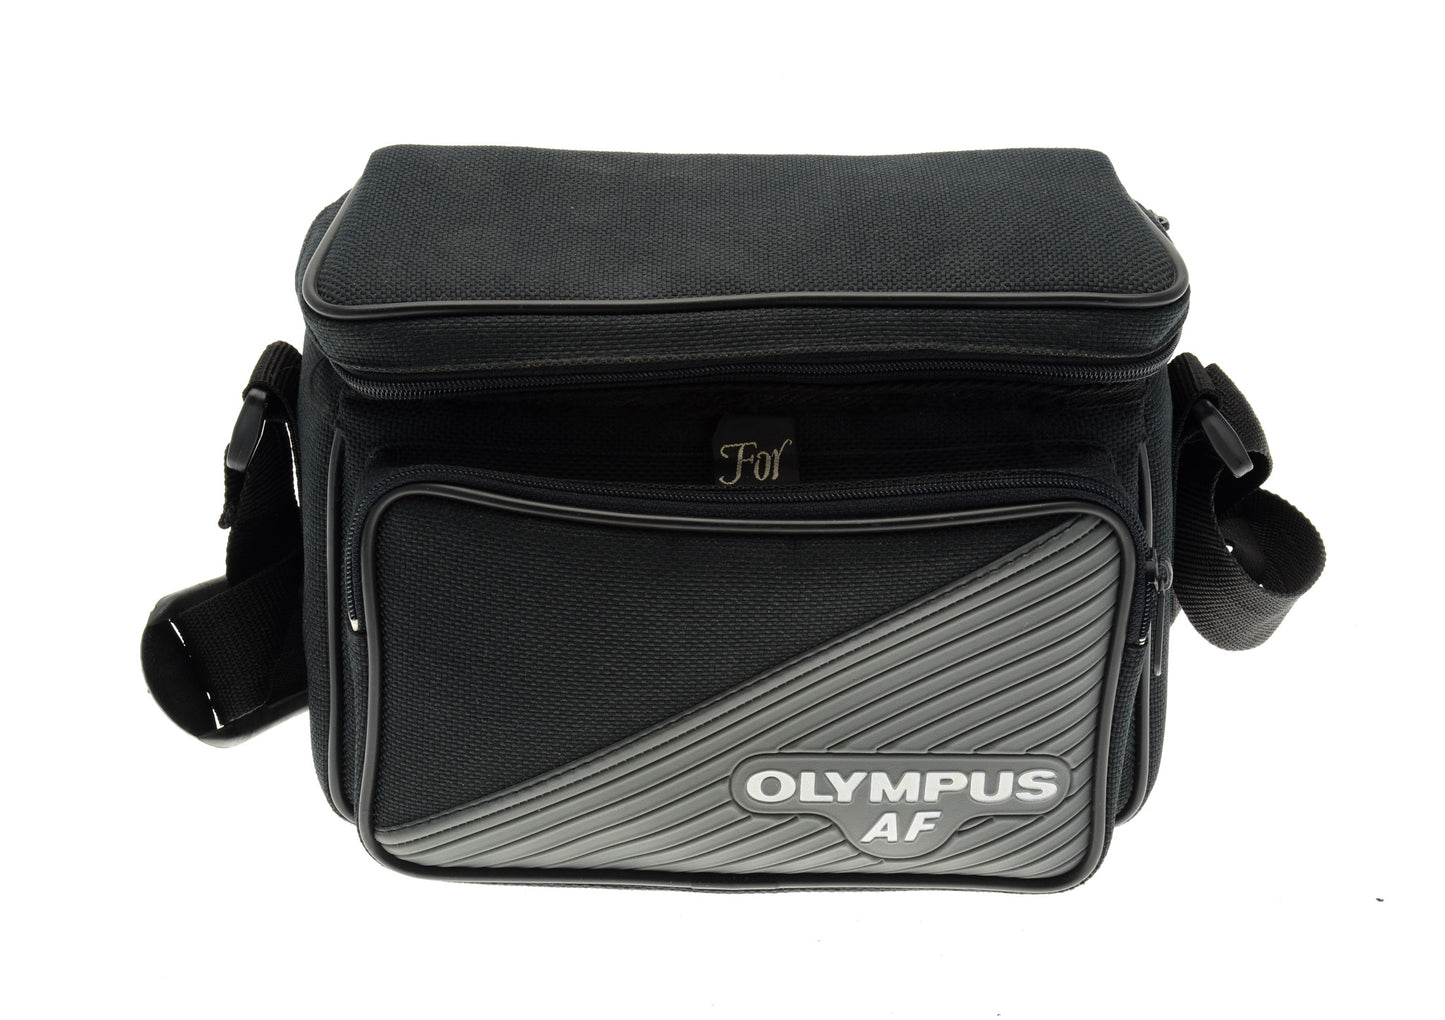 Olympus AF Camera Bag - Accessory